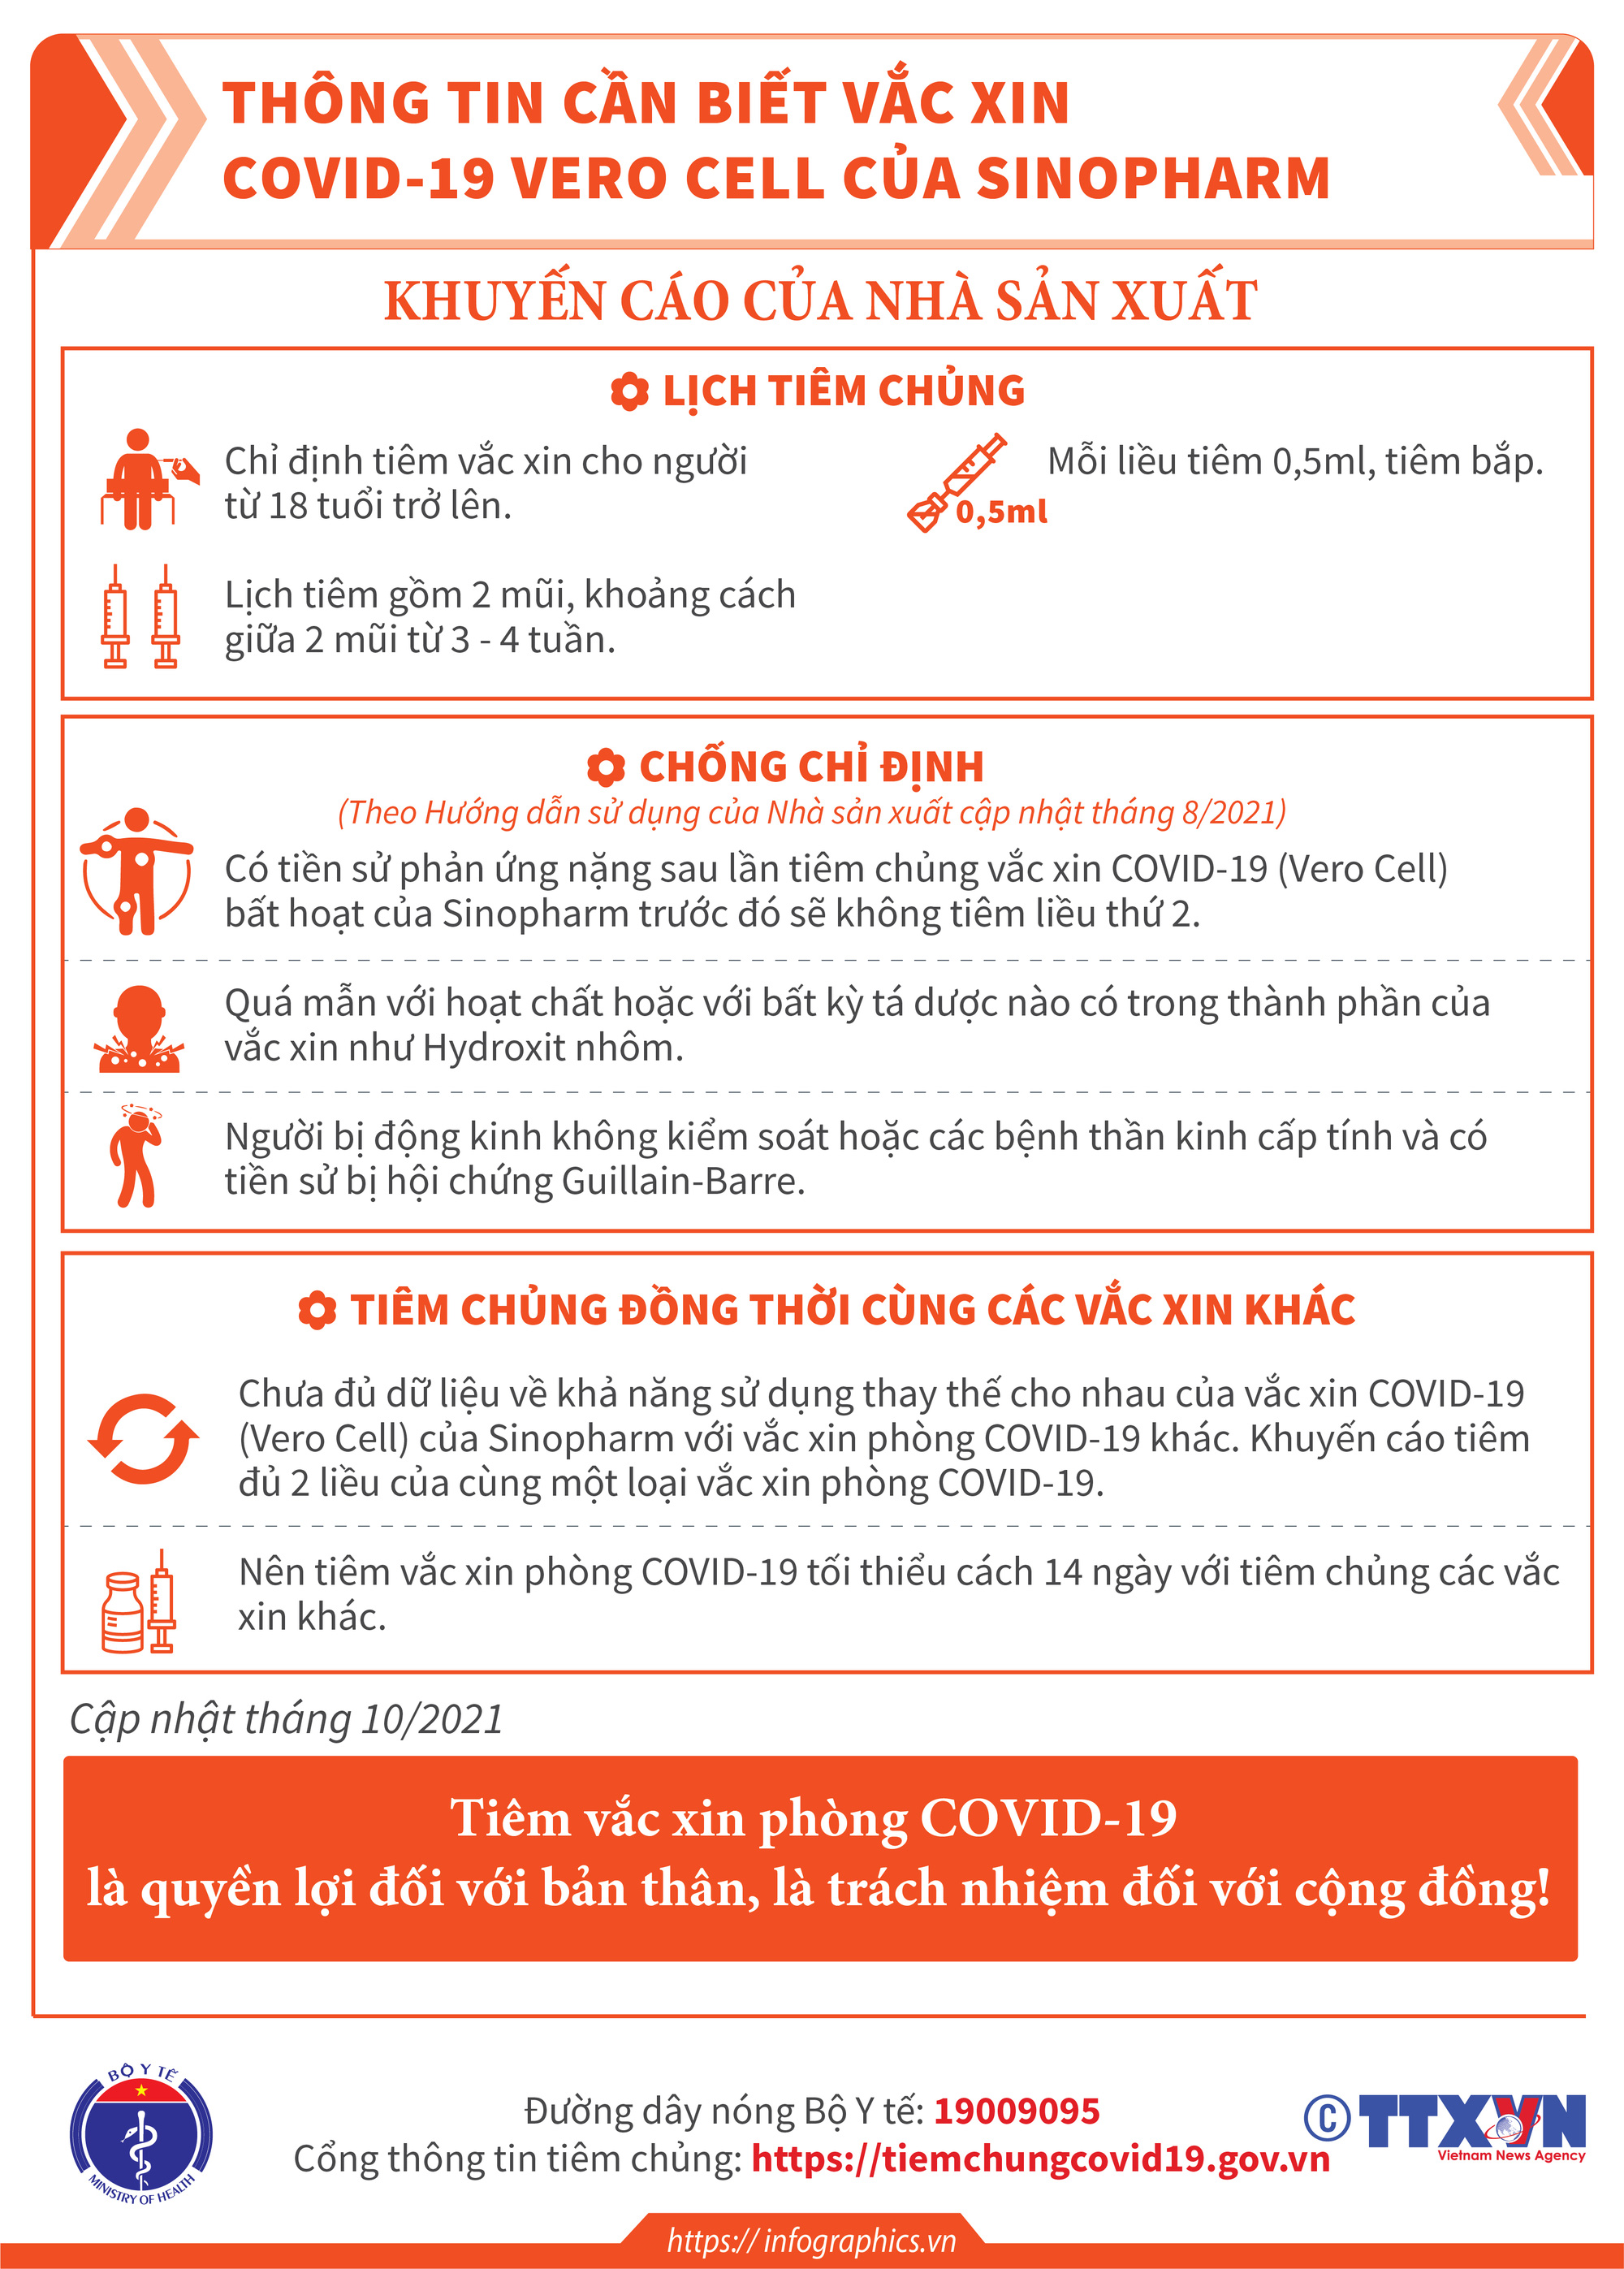 [Infographic] Thông tin cần biết về 03 loại vaccine phòng COVID-19: Vaccine Hayat-Vax, vaccine Verocell, vaccine Abdala  - Ảnh 5.